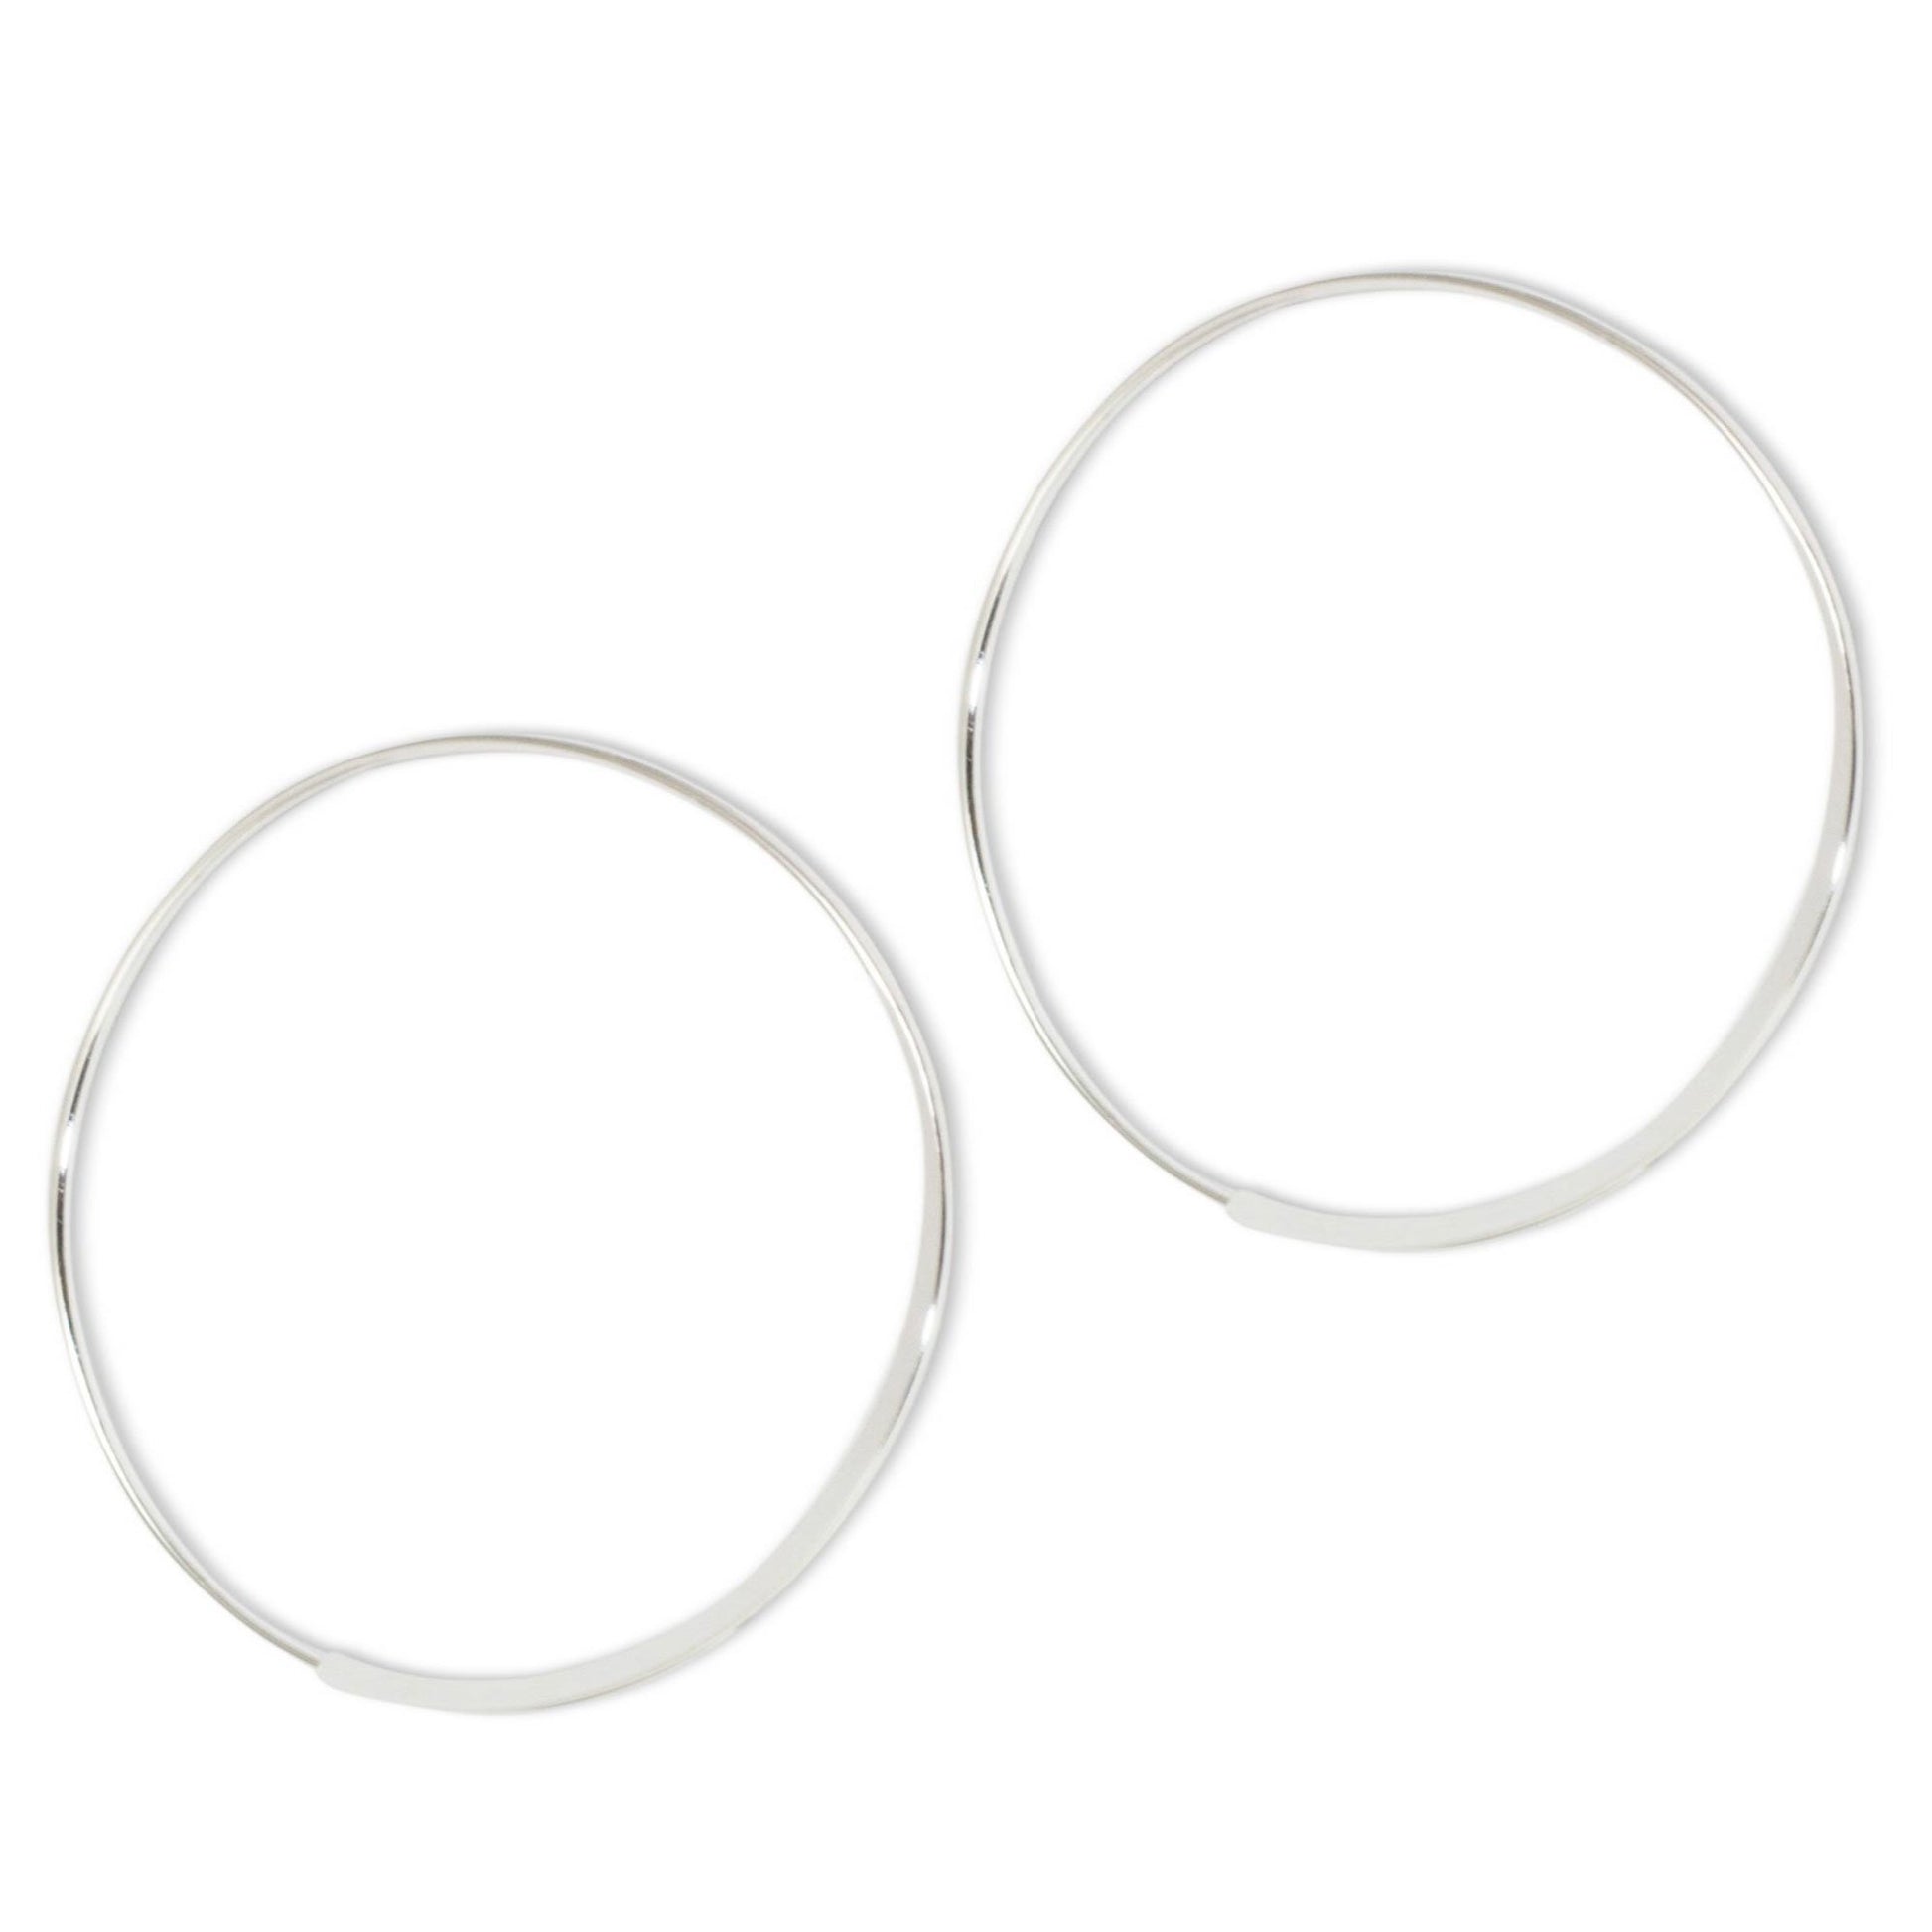 NOVICA - Minimalist Sterling Silver Hoop Earrings